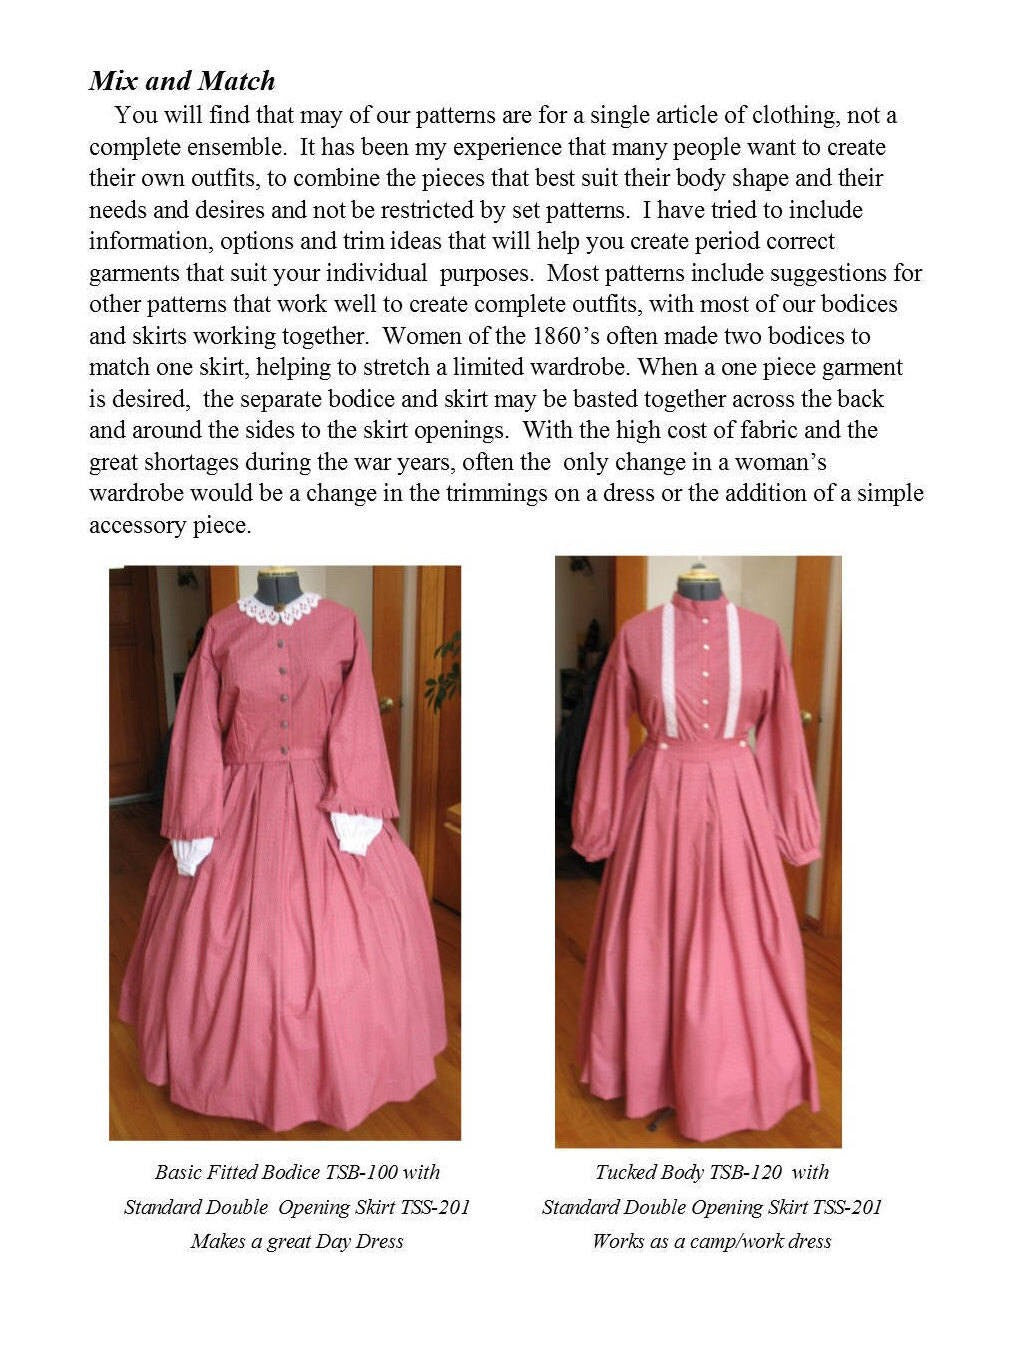 Basic Gathered Bodice /Mid- 19th Century/ Civil War Era Bodice Pattern/ Timeless Stitches Sewing Pattern TSB-101